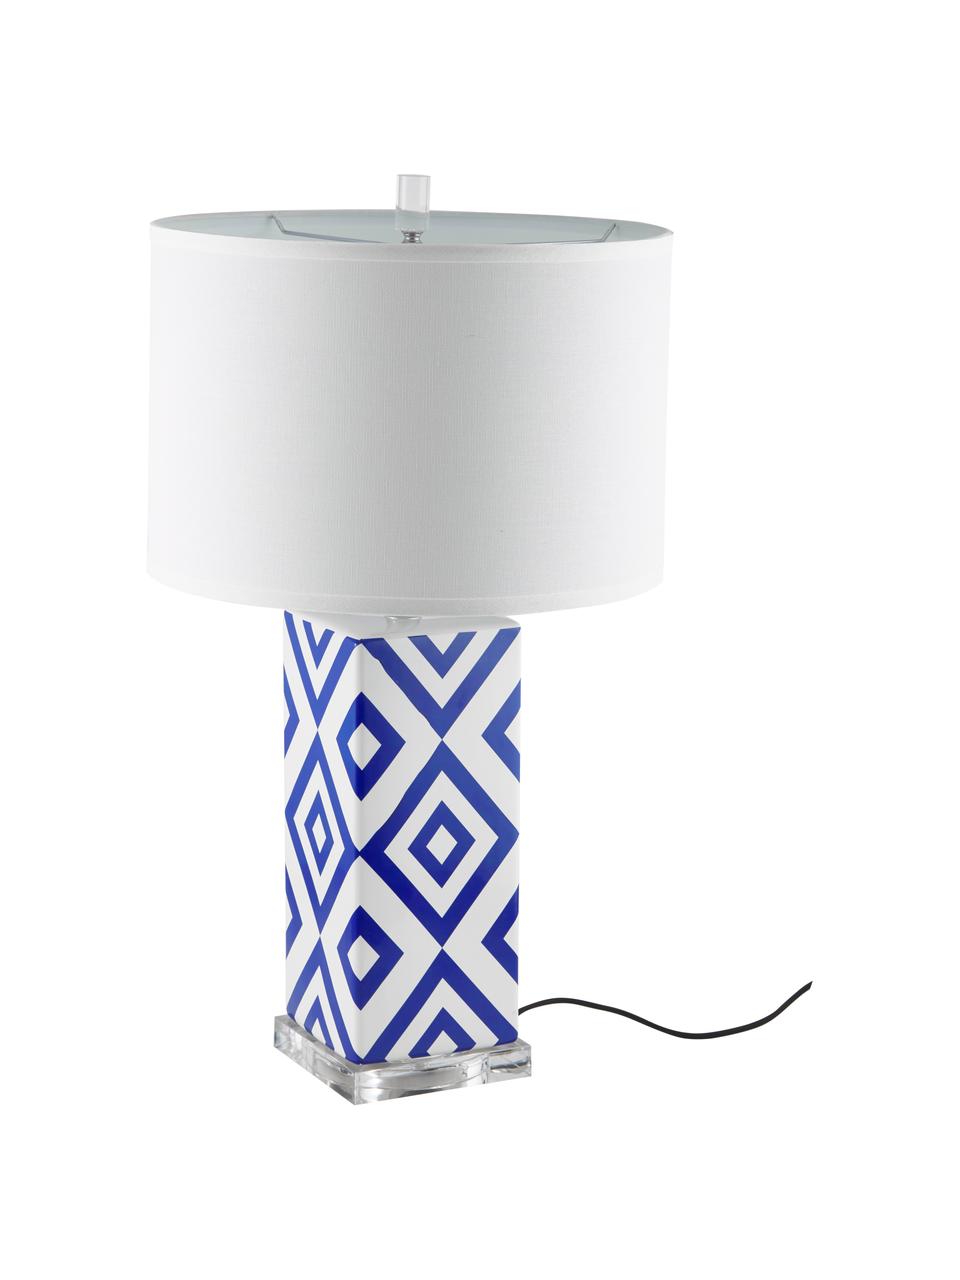 Große Tischlampen Patricia, 2 Stück, Lampenschirm: Textil, Lampenfuß: Keramik, Acryl, Blau, Weiß, Ø 38 x H 69 cm